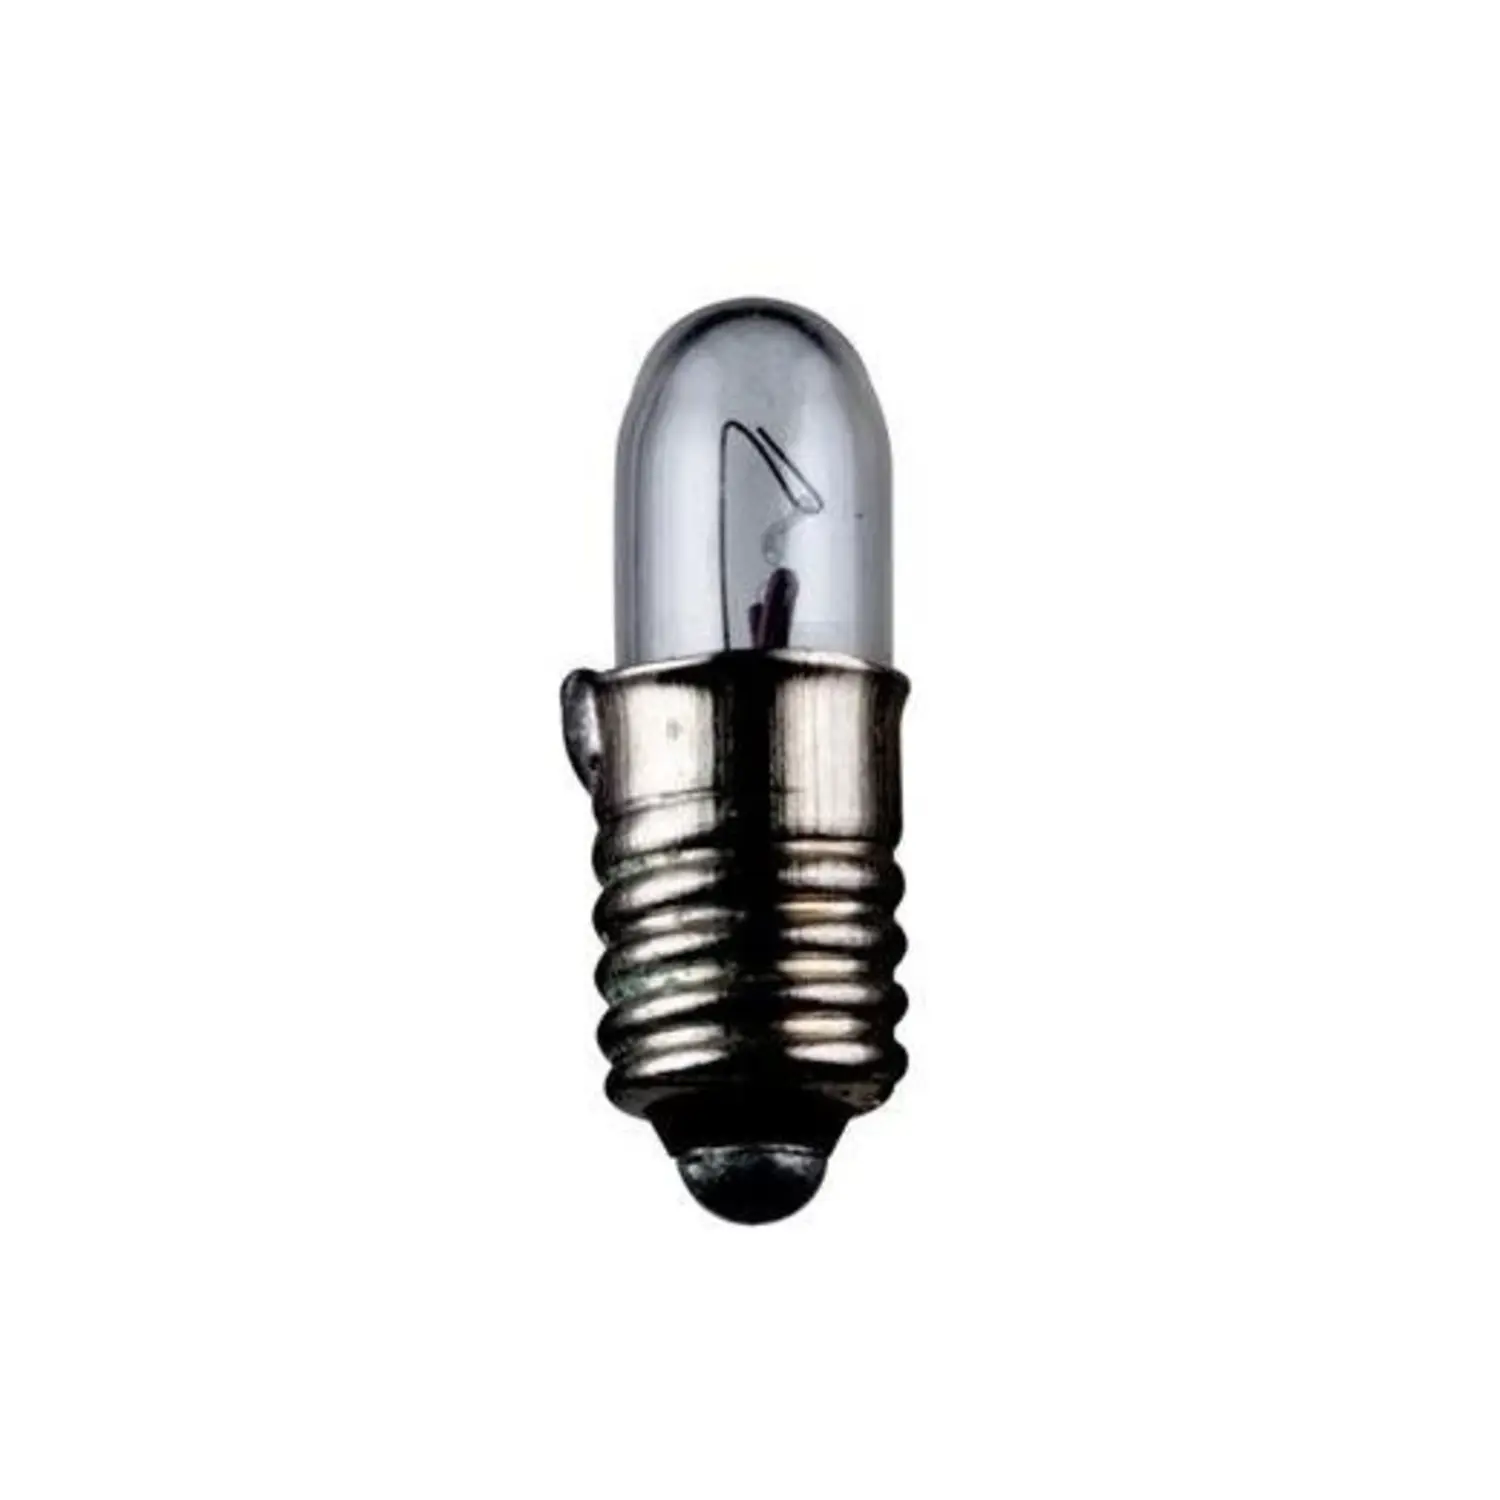 immagine lampadina in miniatura modellismo treno e5.5 1,20 watt 24 volt